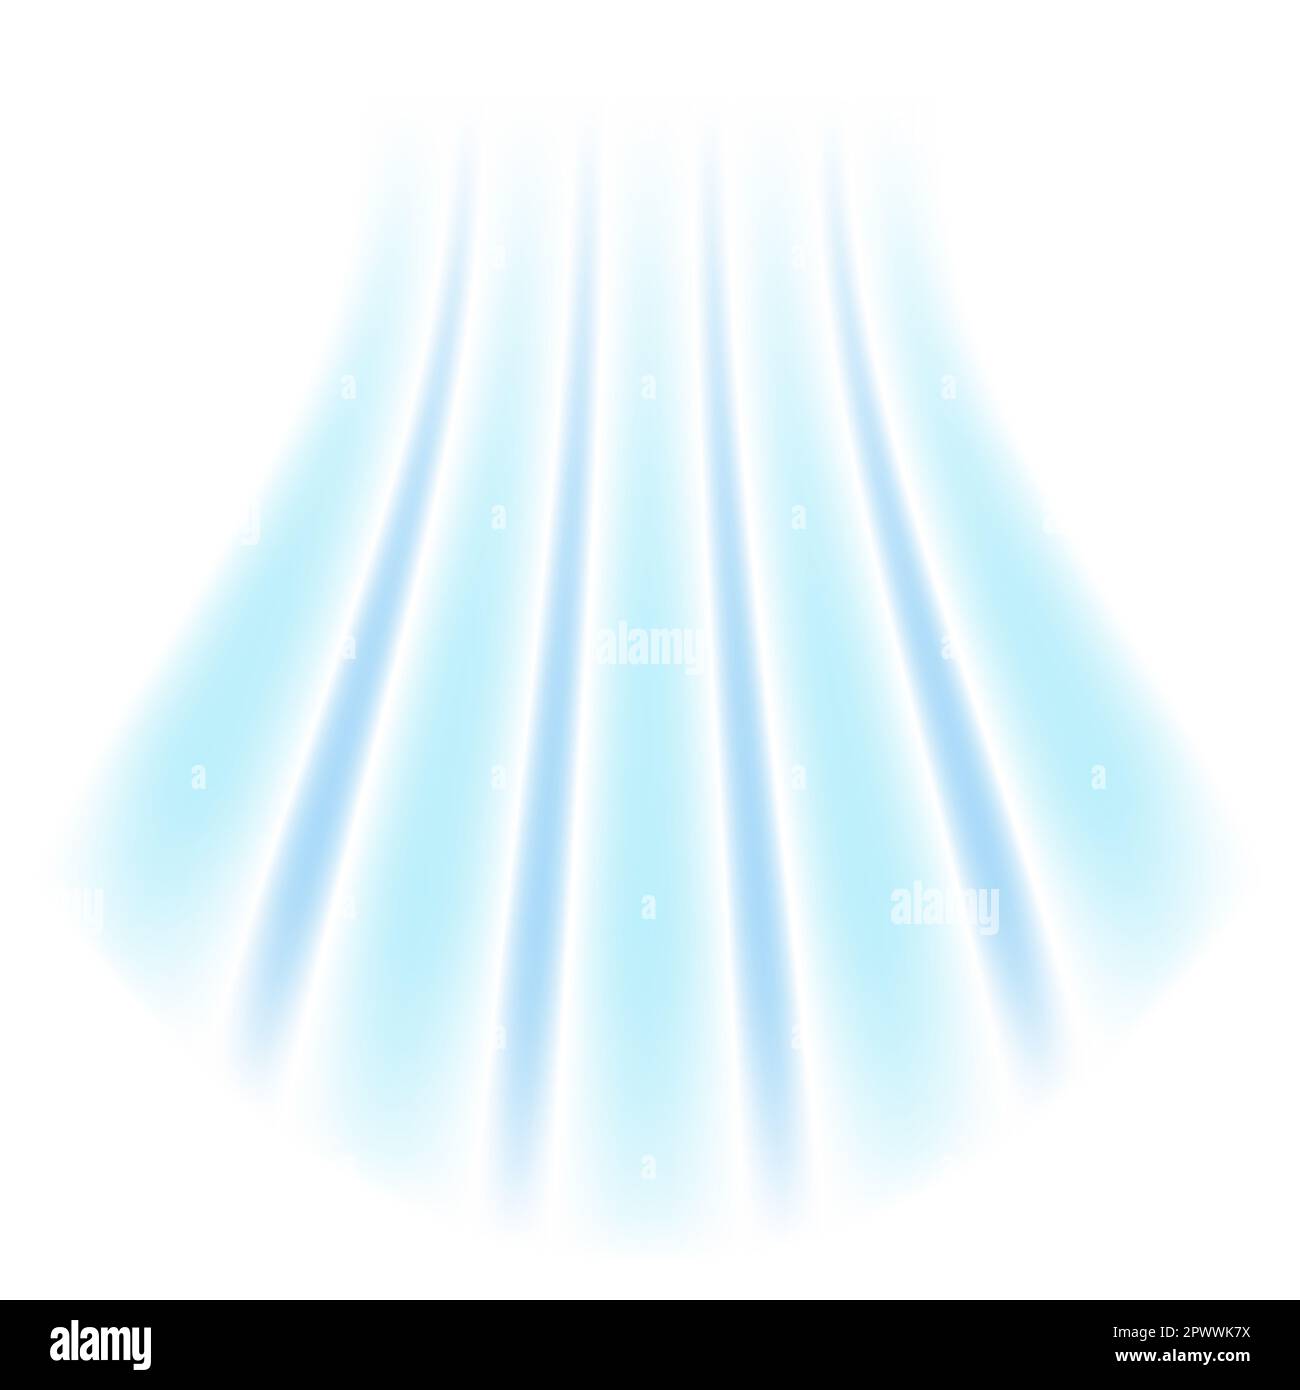 Frischluftstrom aus der Klimaanlage. Funkelnder Lichteffekt mit blauen  Strahlen. Nachahmung von kaltem Wind oder Frost auf weißem Hintergrund  Stockfotografie - Alamy